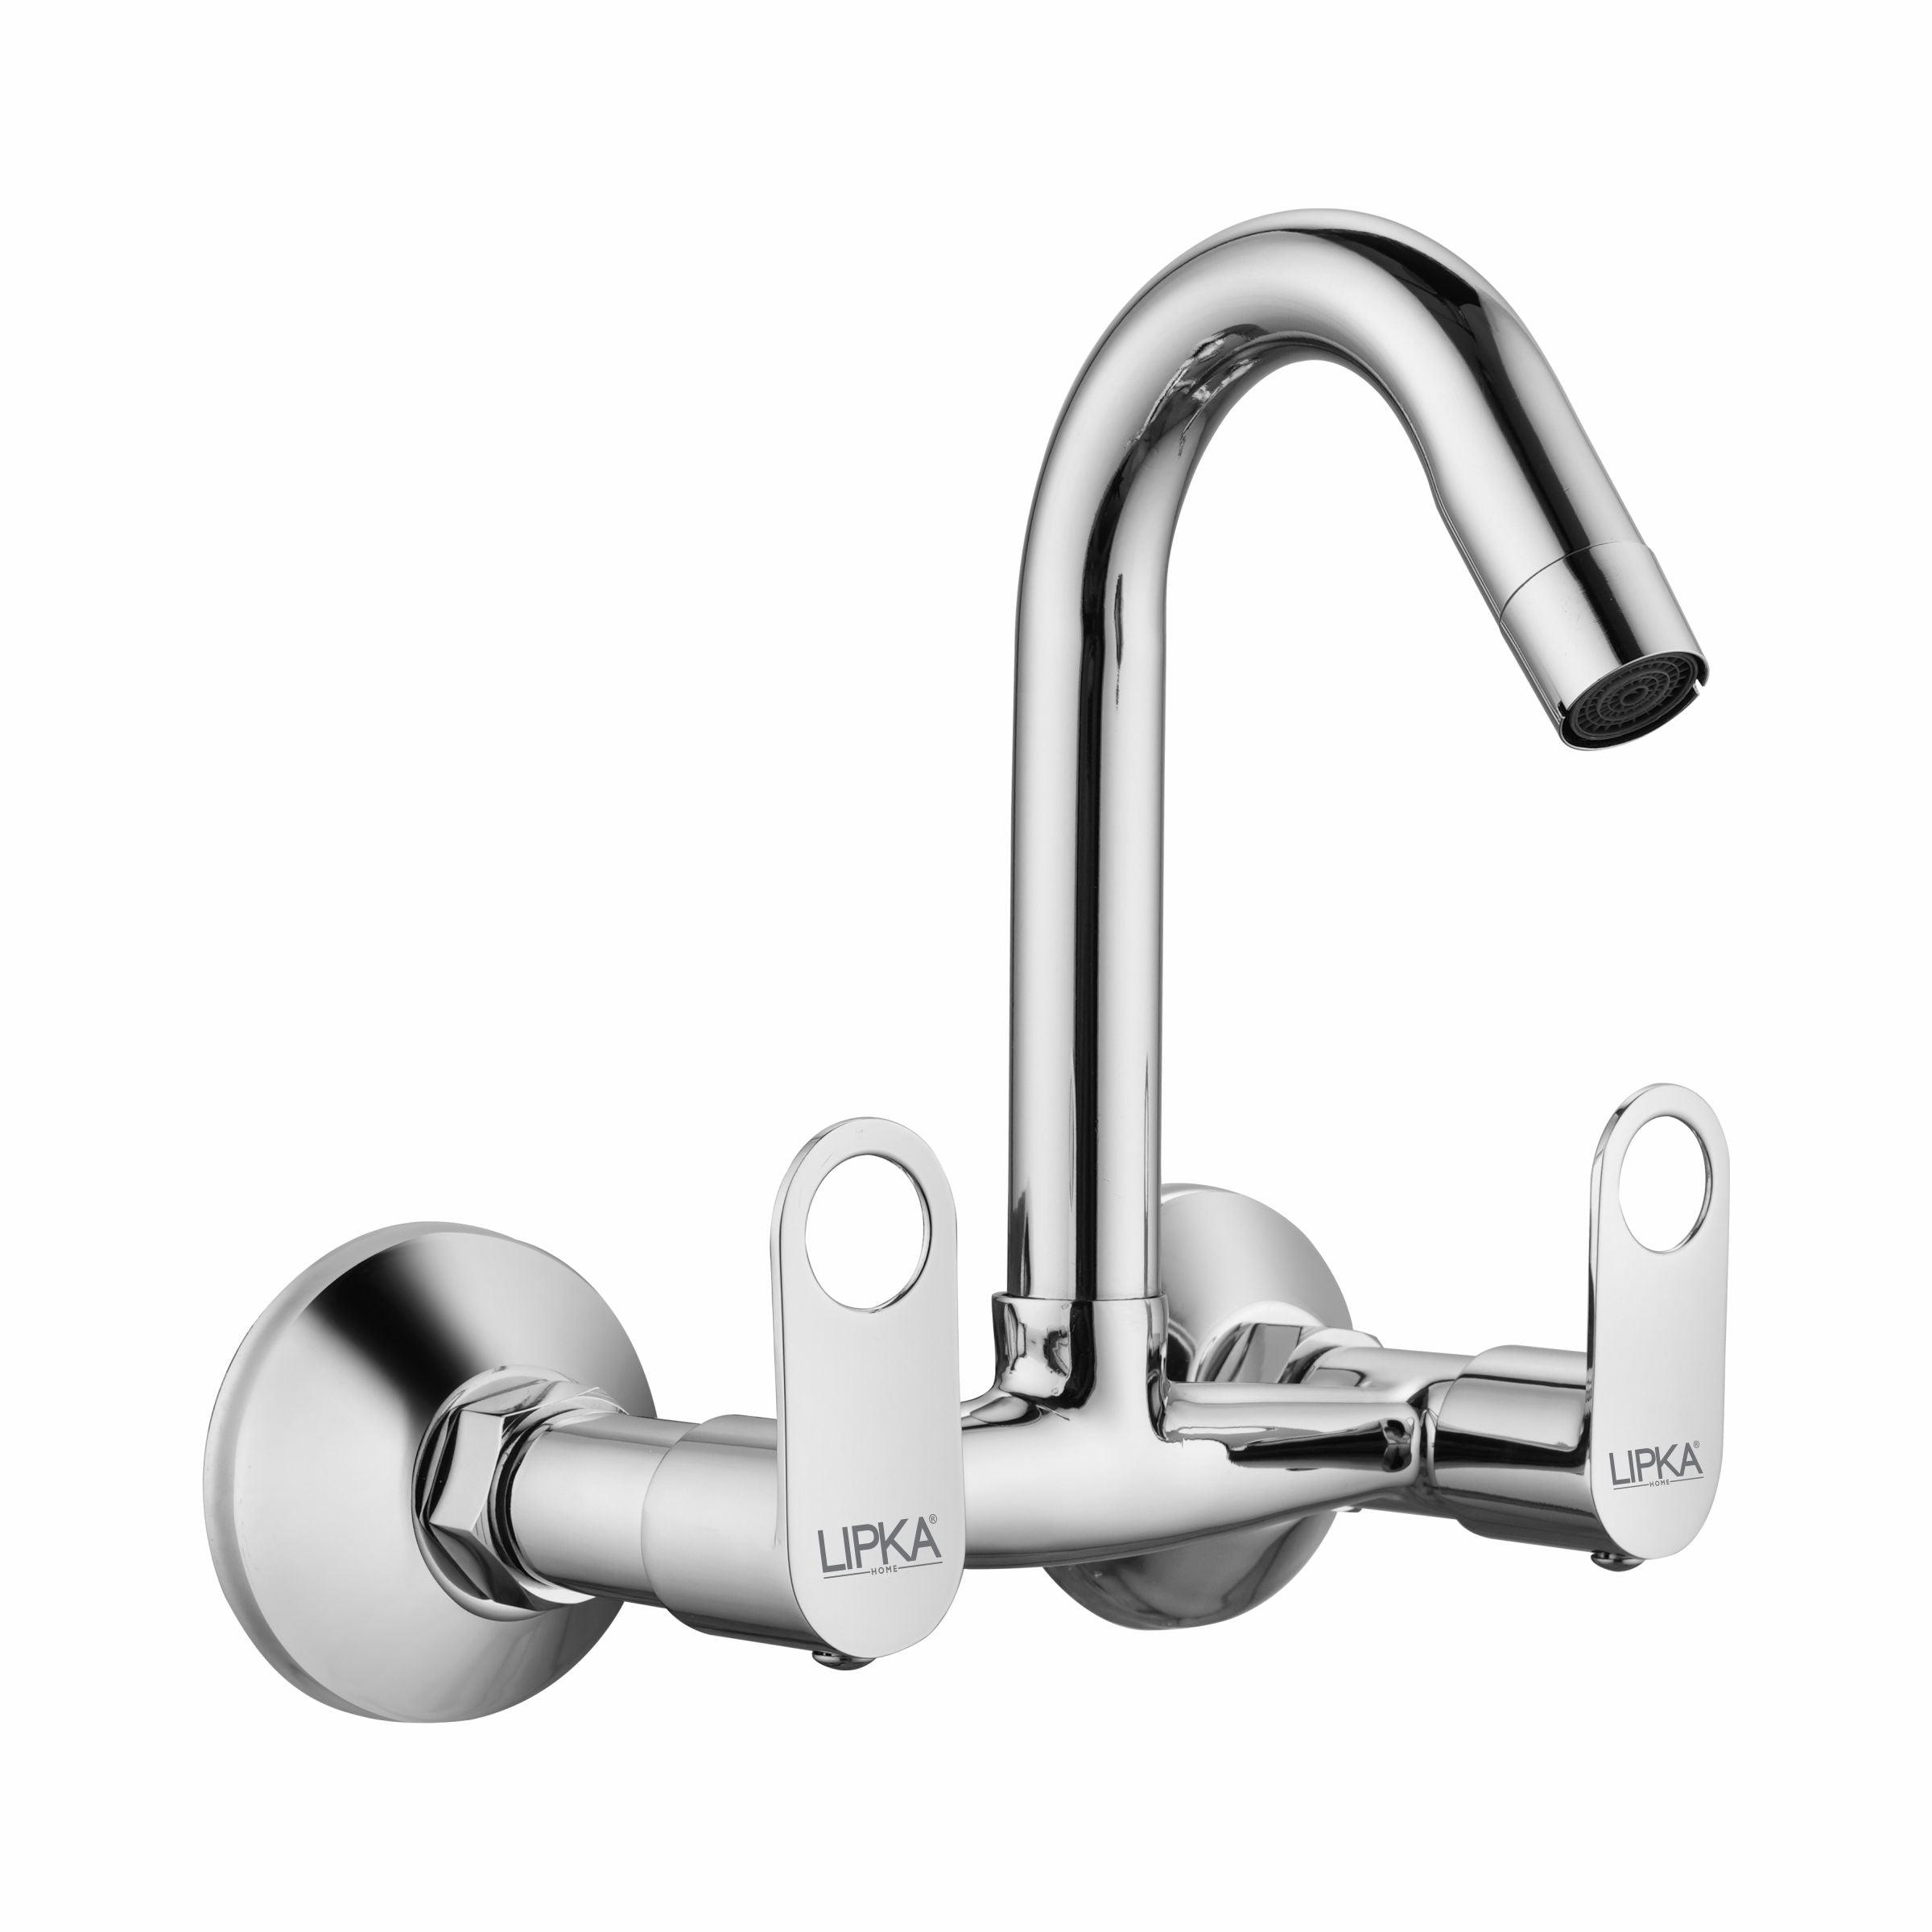 Orbiter Sink Mixer Brass Faucet with Swivel Spout Faucet - LIPKA - Lipka Home